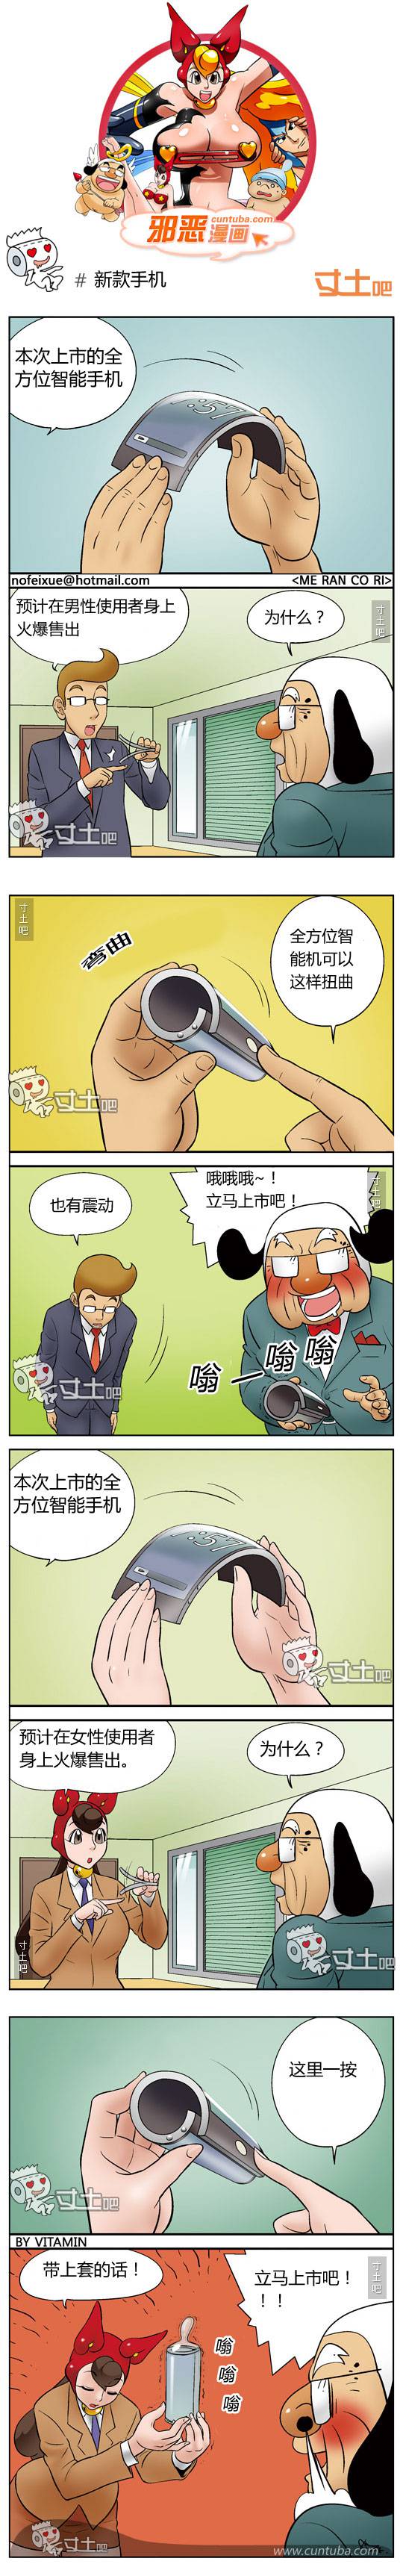 邪恶漫画爆笑囧图第162刊：新产品